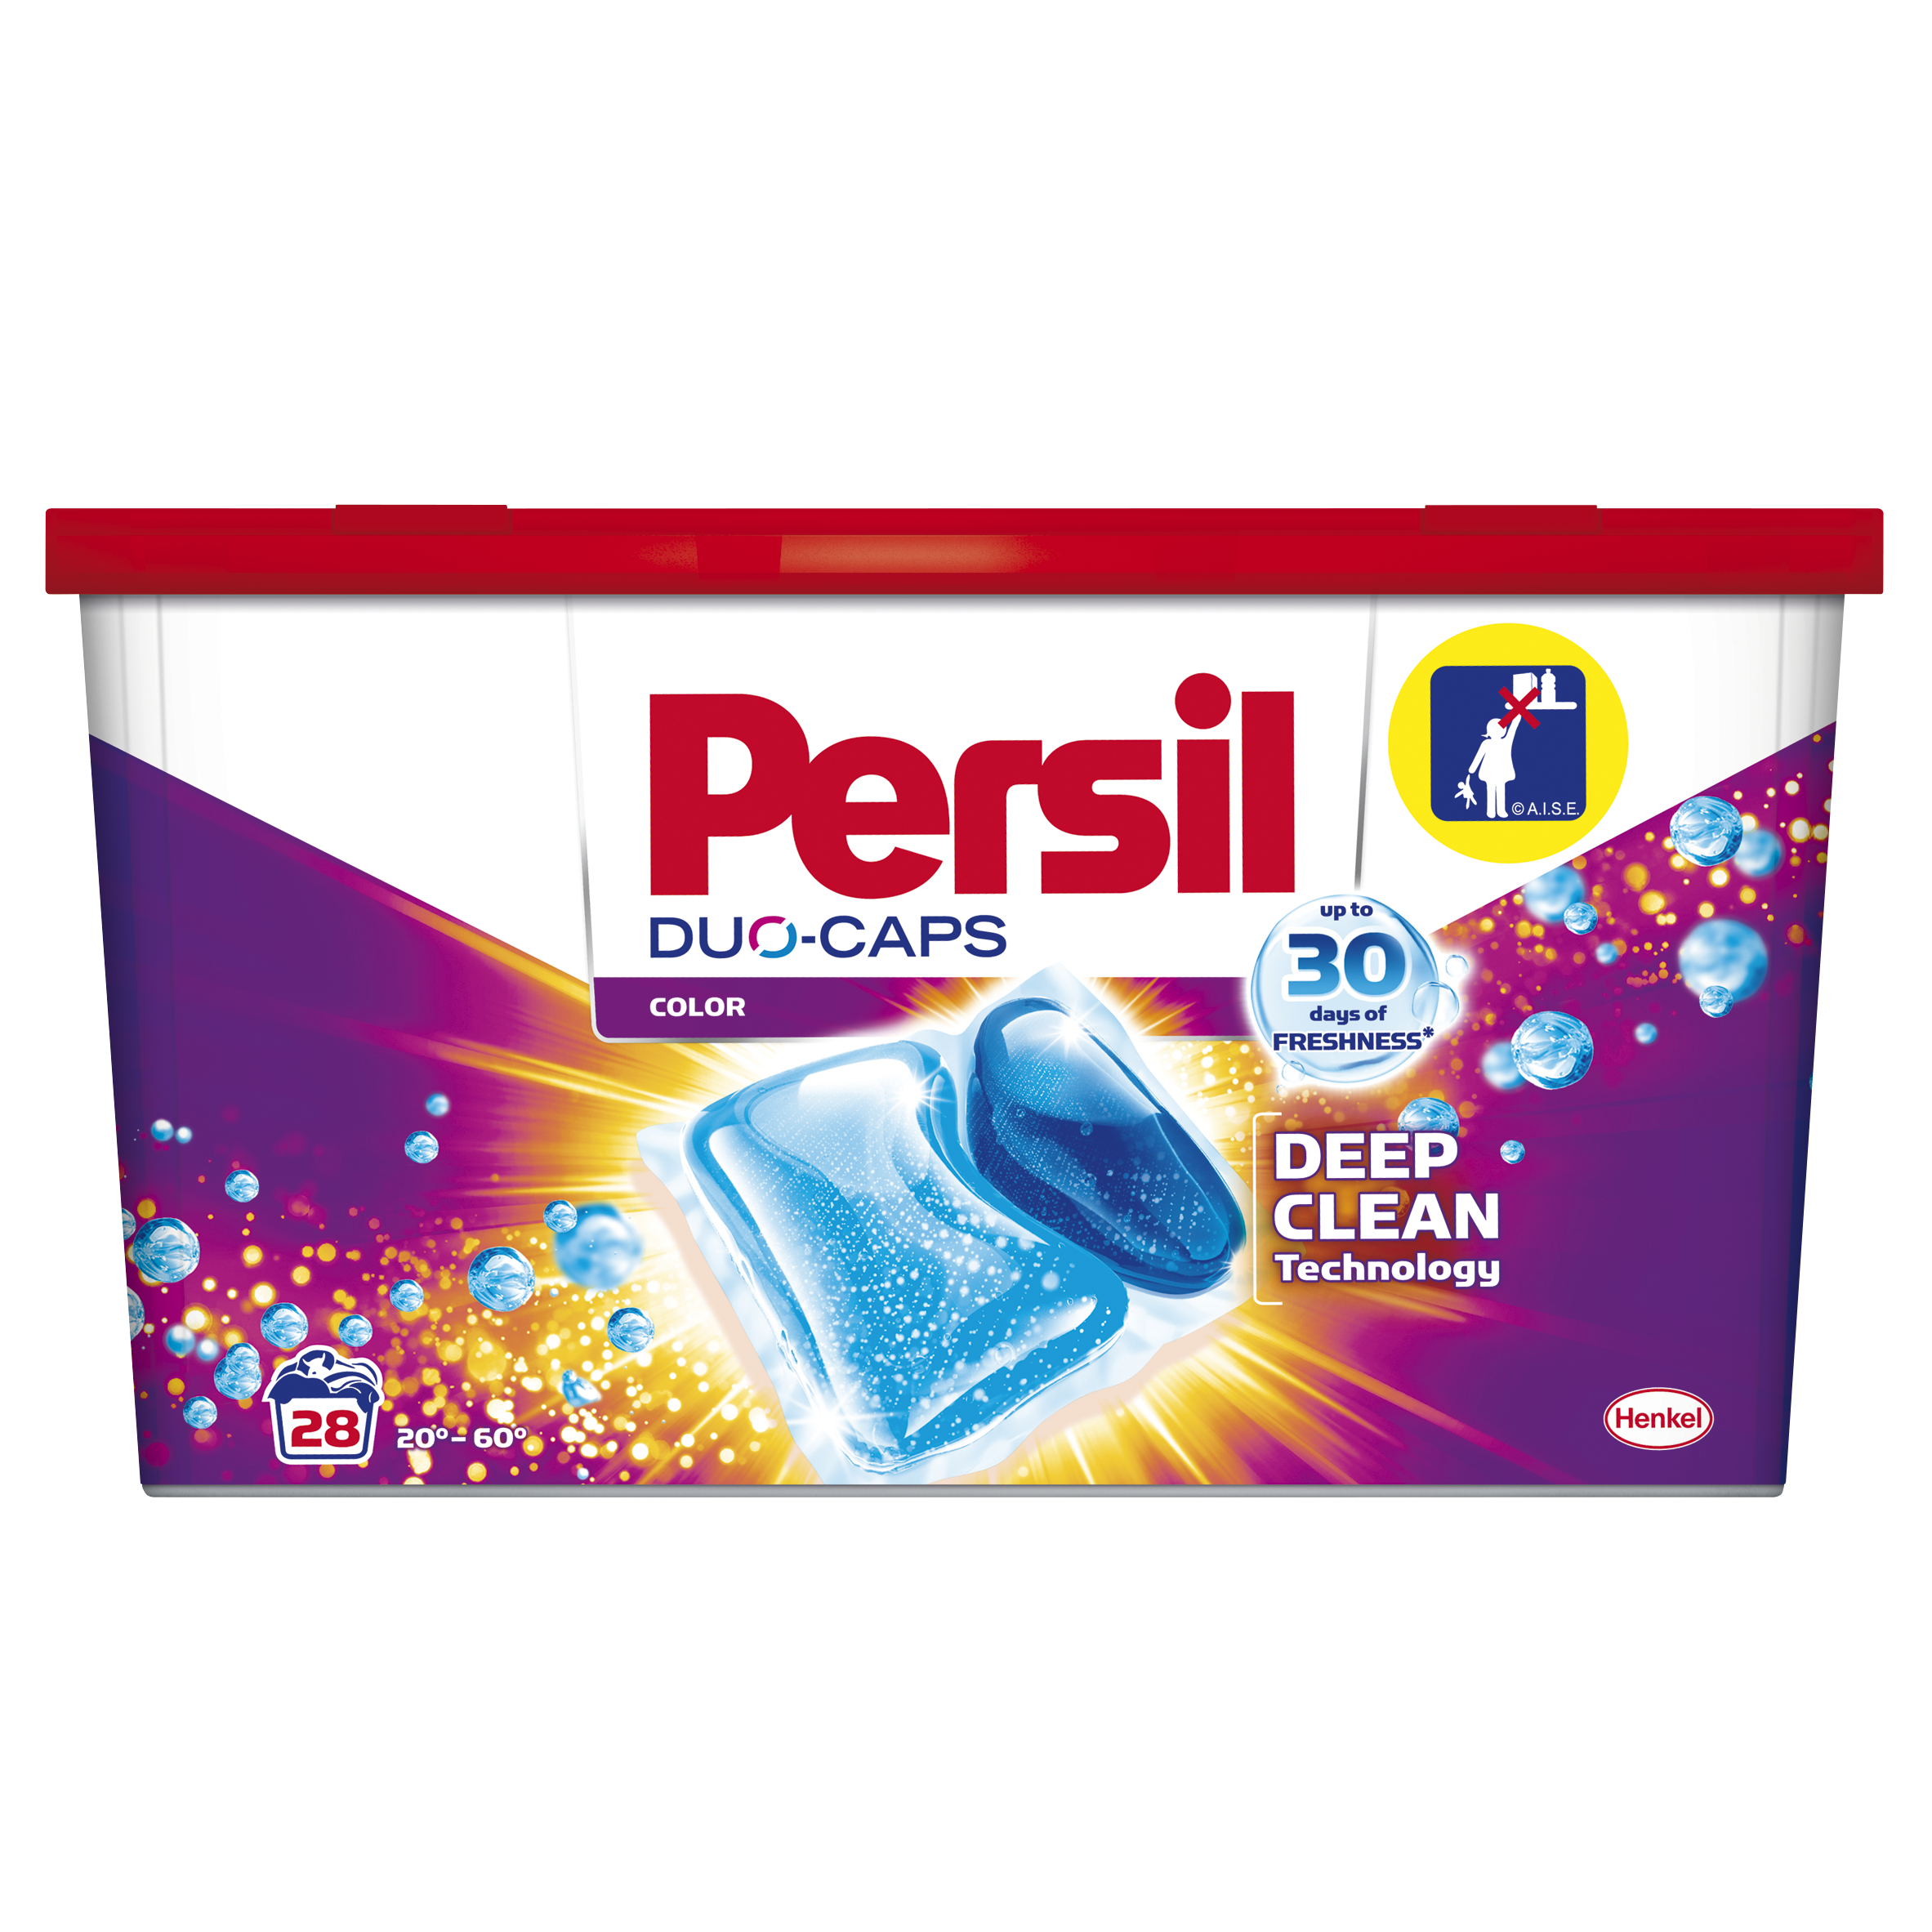 Дуо-капсулы для стирки Persil Color, 28 шт. (737016) - фото 1